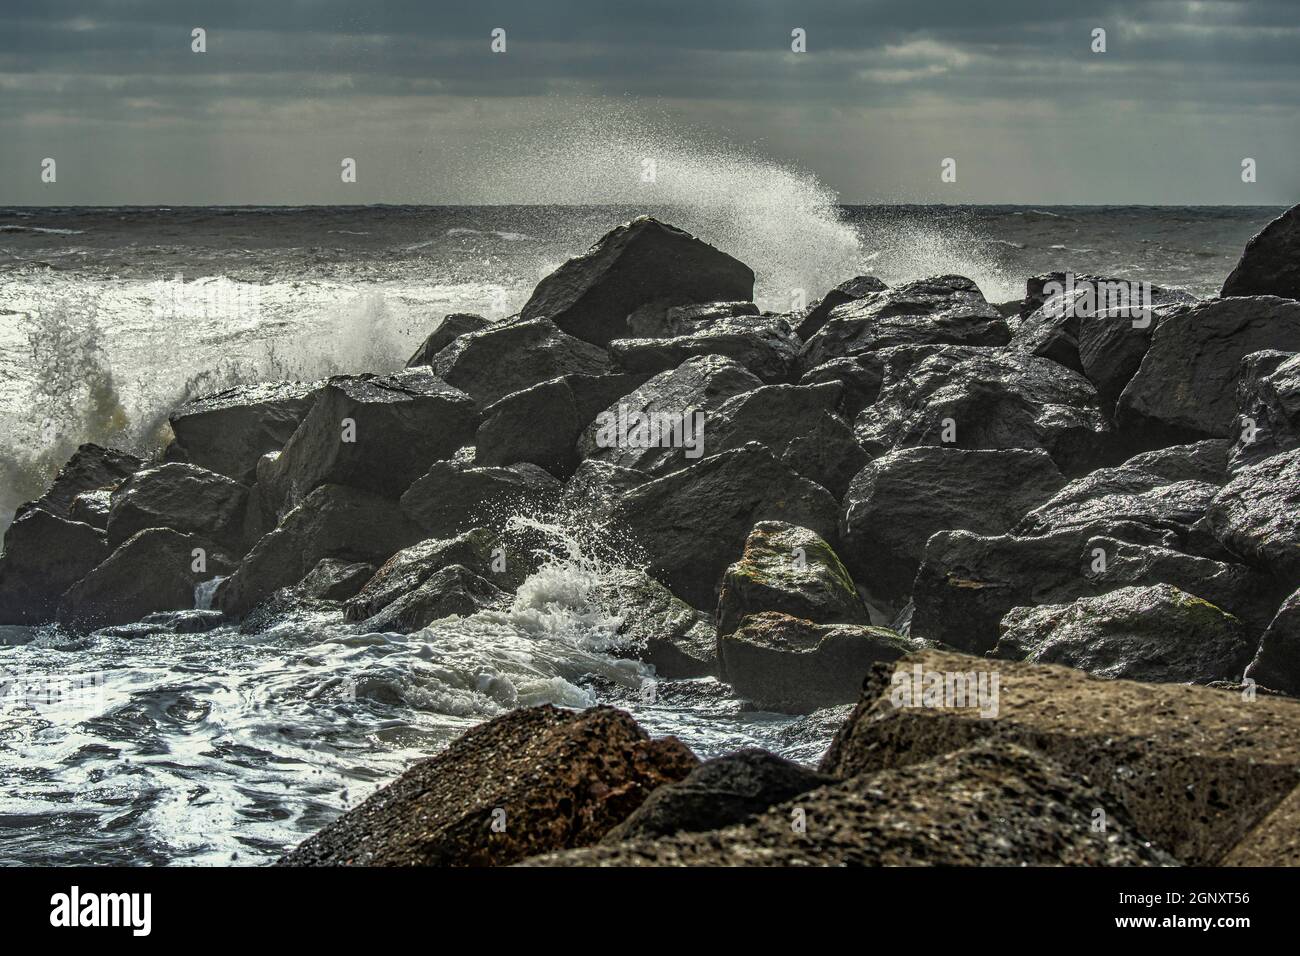 La mer du nord s'écrase contre les rochers avec de fortes vagues et un jet de mousse. Mer du Nord, Danemark, Europe Banque D'Images